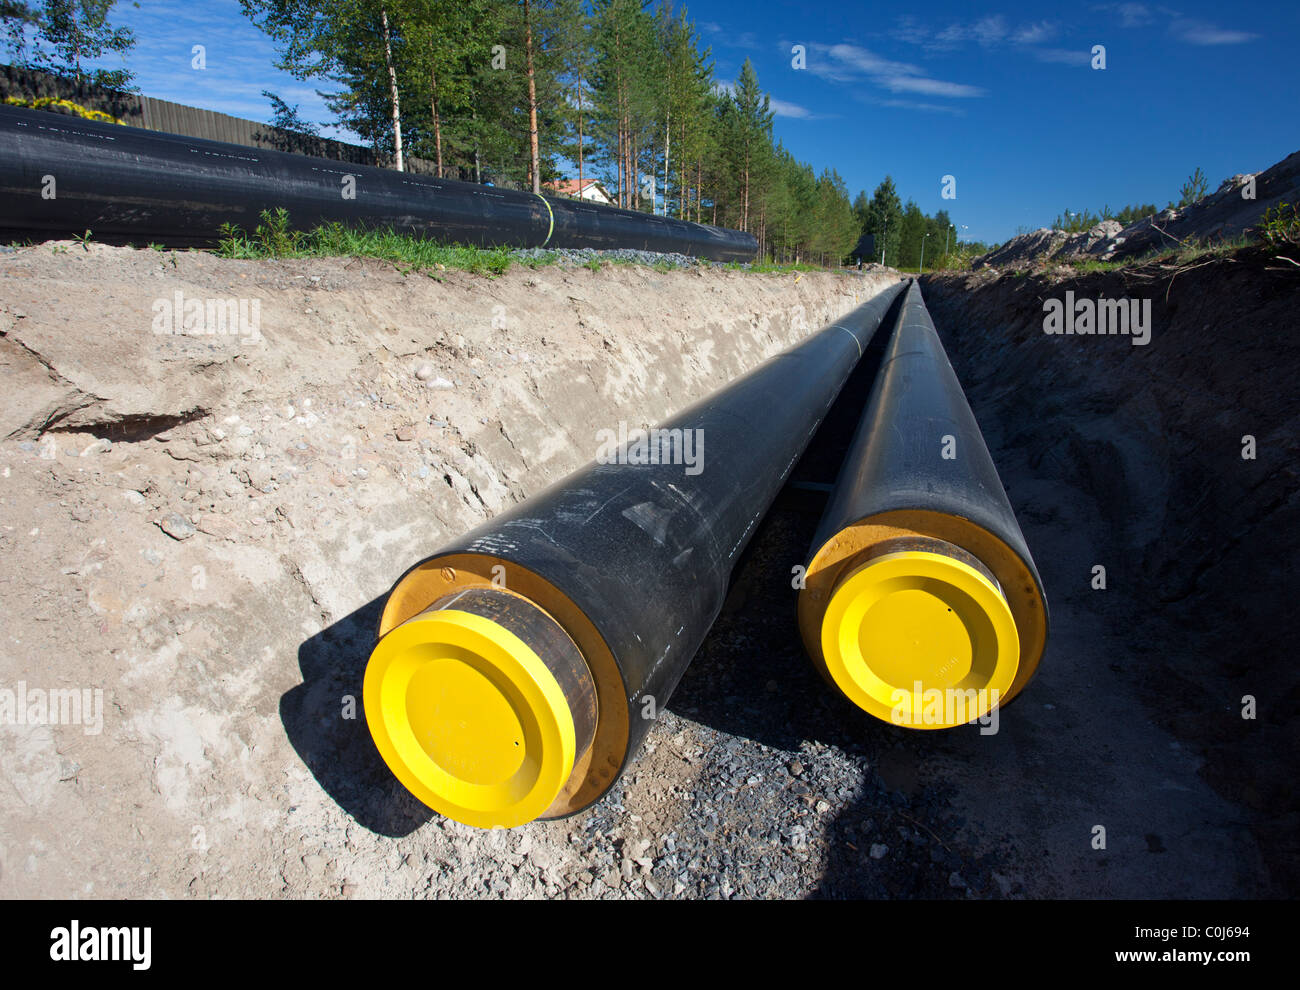 Chauffage urbain souterrain en construction de pipelines.Certains des tuyaux déjà creusé dans le sol , Finlande Banque D'Images